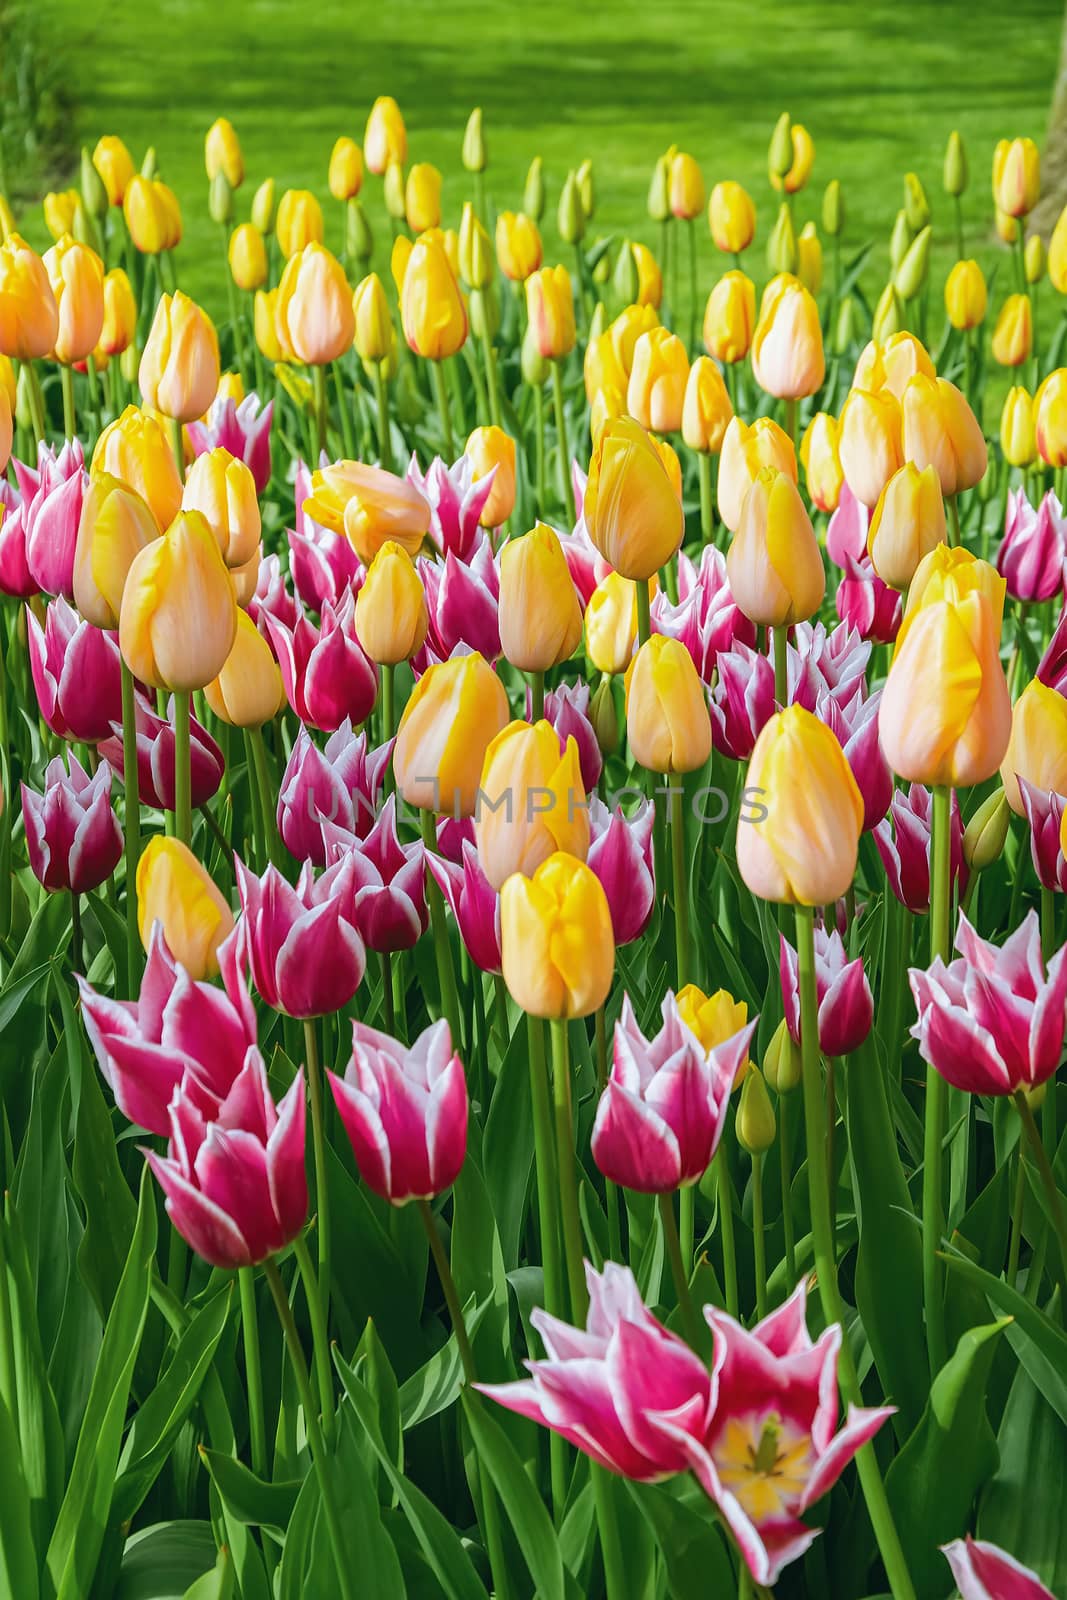 Flowerbed of tulips in the garden. Springtime in Netherlands